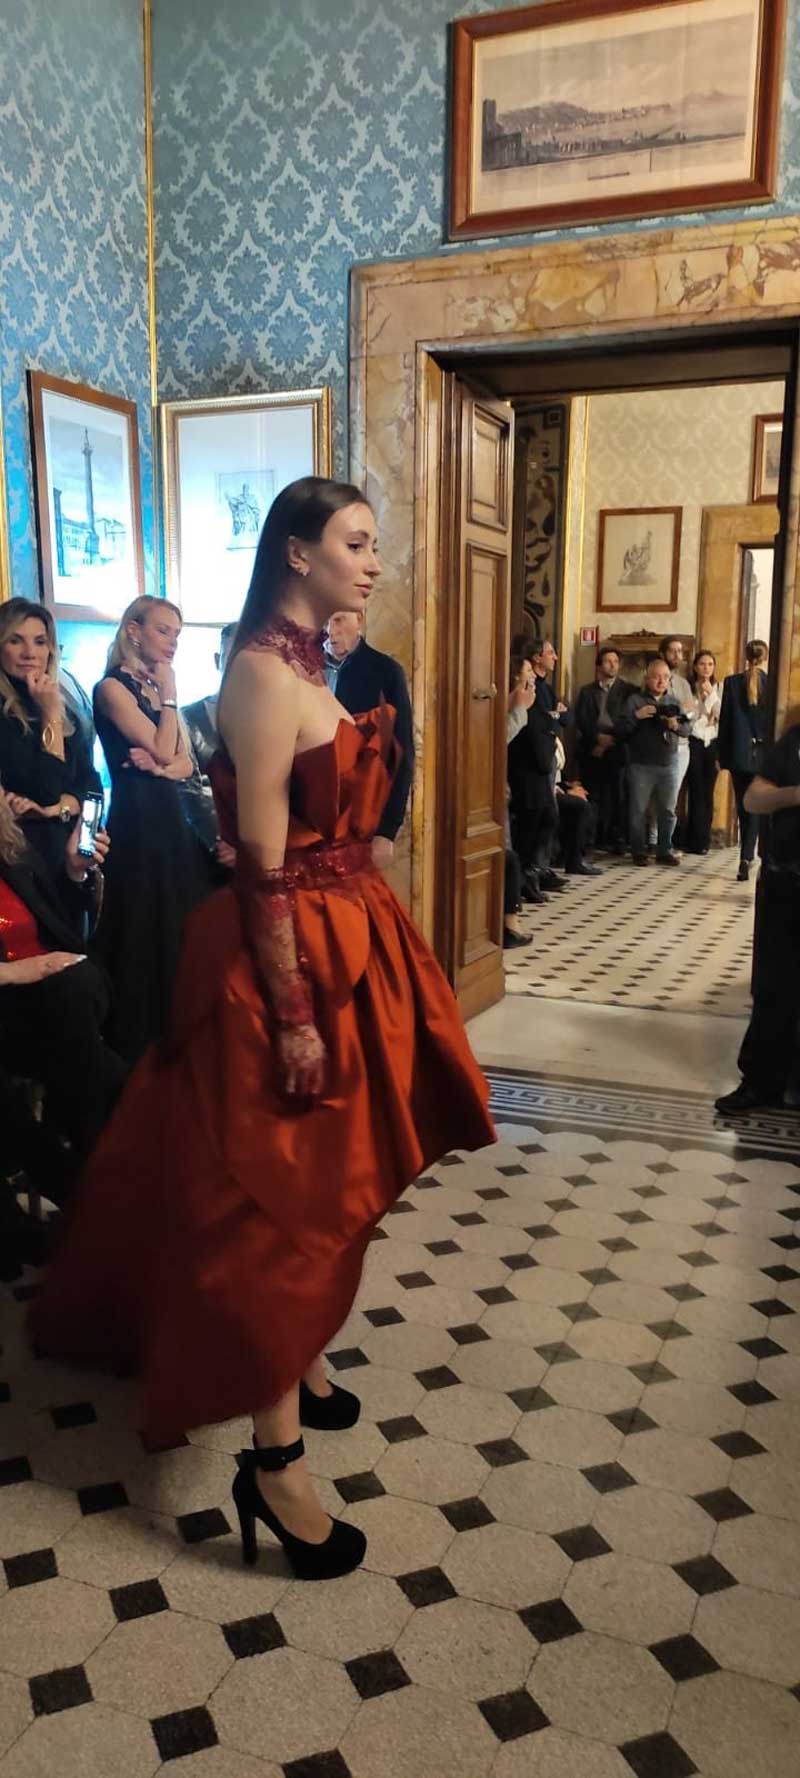 Mod’Art Roma - Il fascino dei colori - sfilata modelle nello storico Palazzo in centro - abito bruno rosso cerimonia o matrimonio